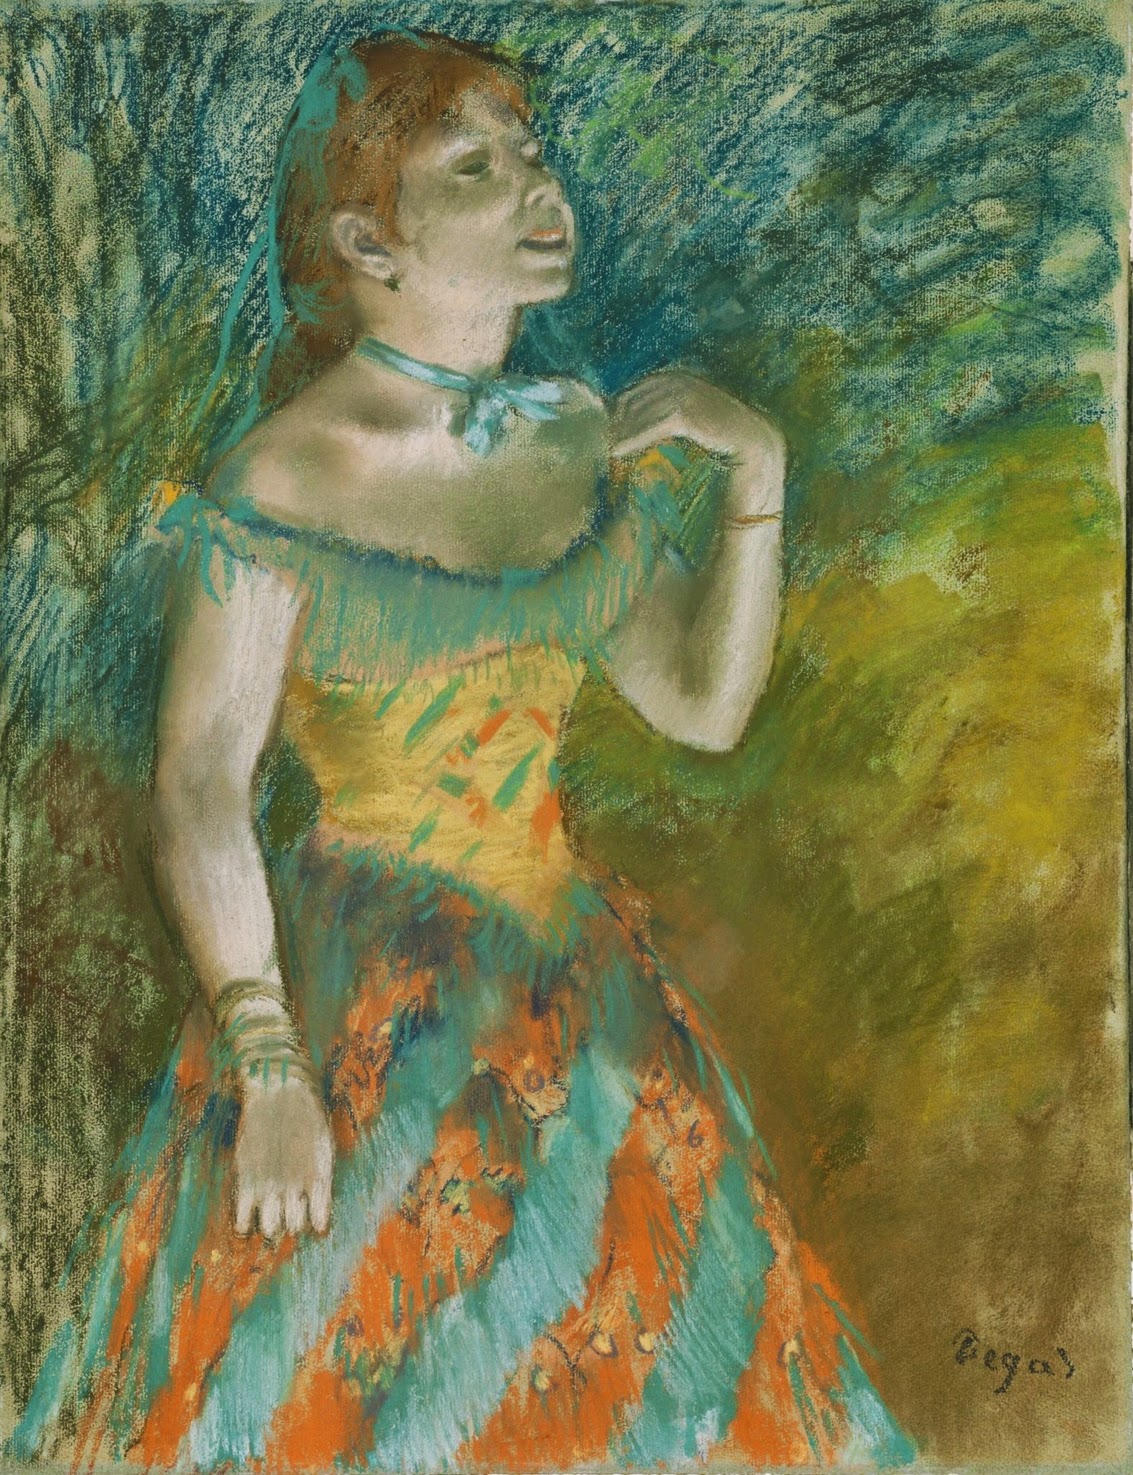 Edgar+Degas-1834-1917 (201).jpg